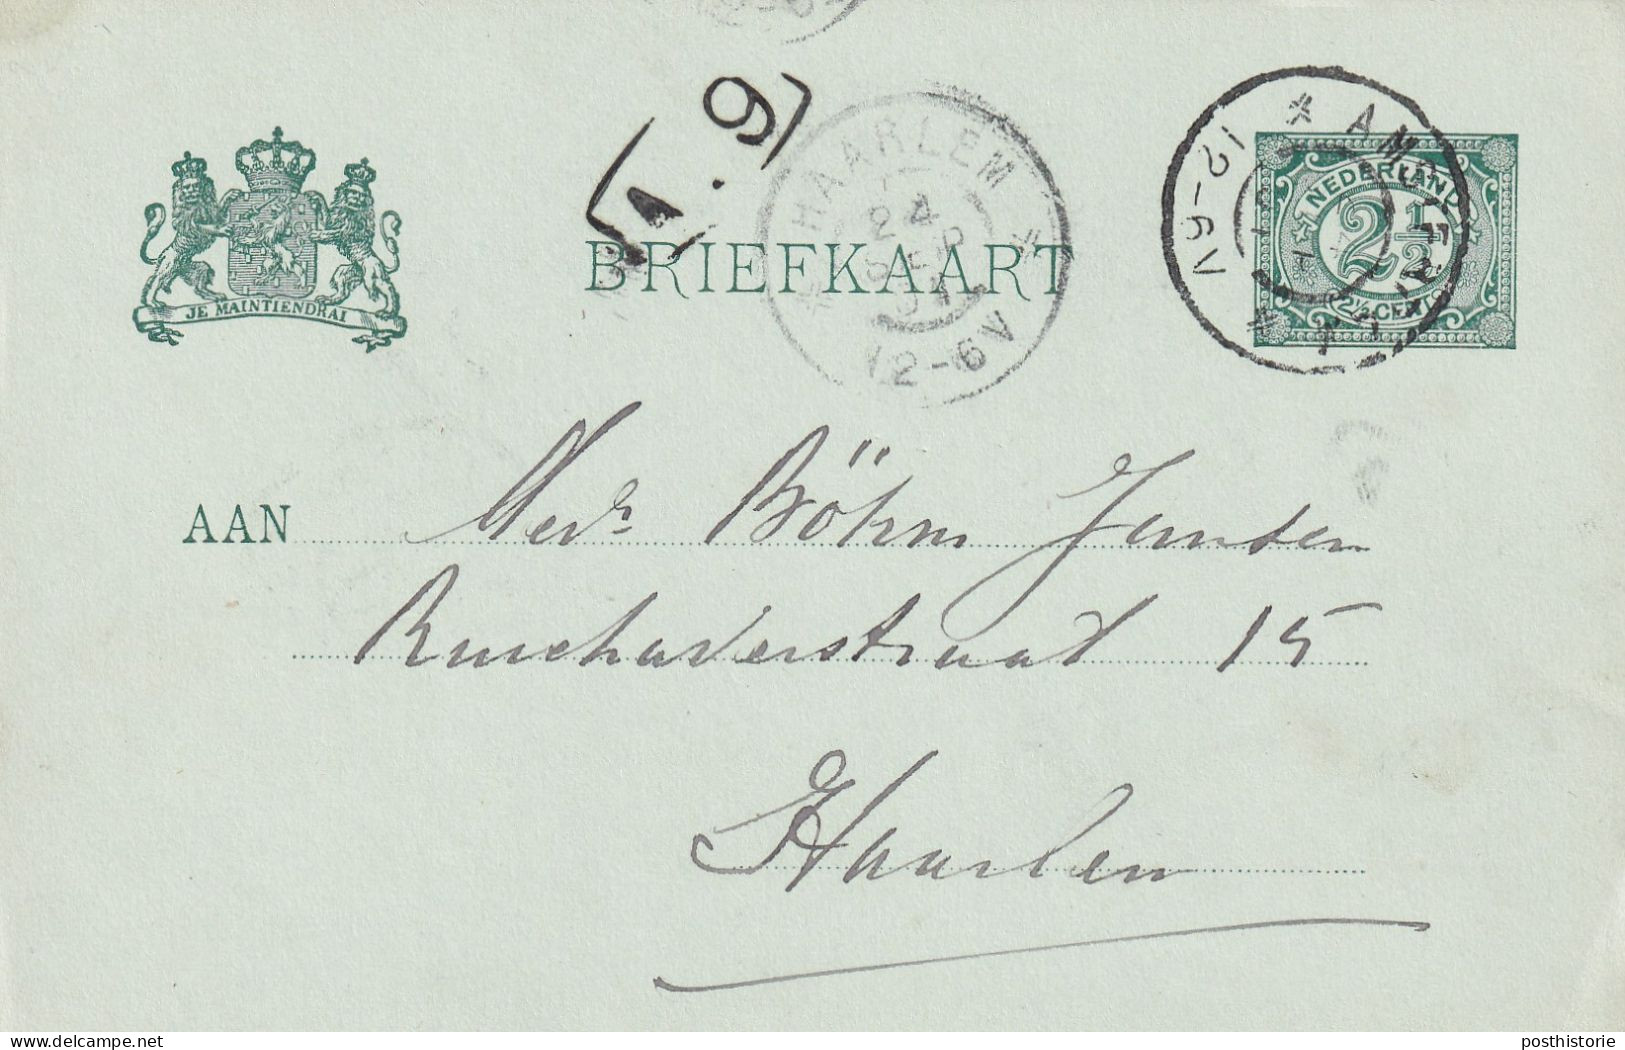 18 verschillende gebruikte briefkaarten 1871/1910